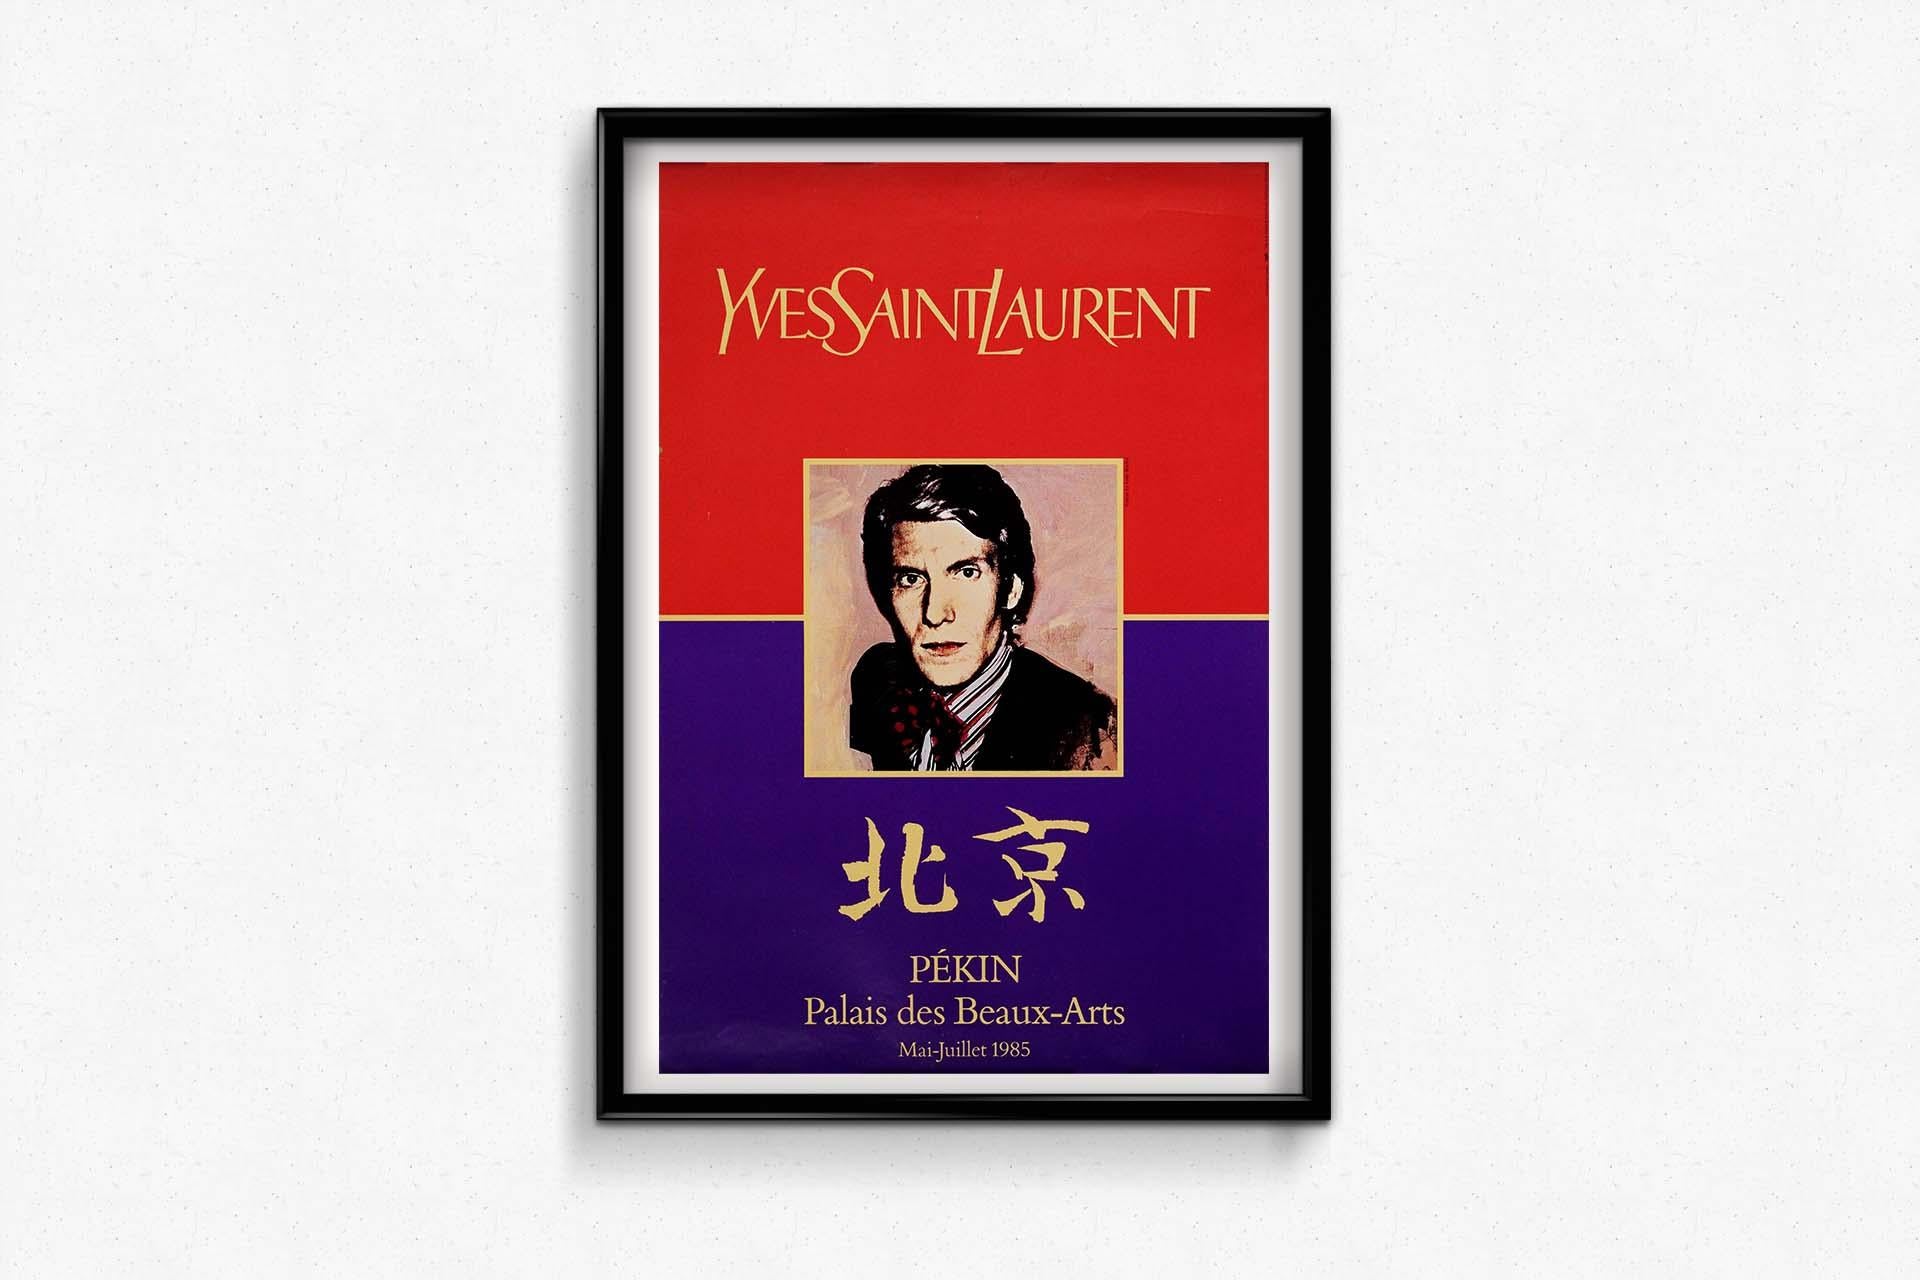 Andy Warhol 1985 original poster Yves Saint Laurent Pékin Palais des Beaux-Arts For Sale 1